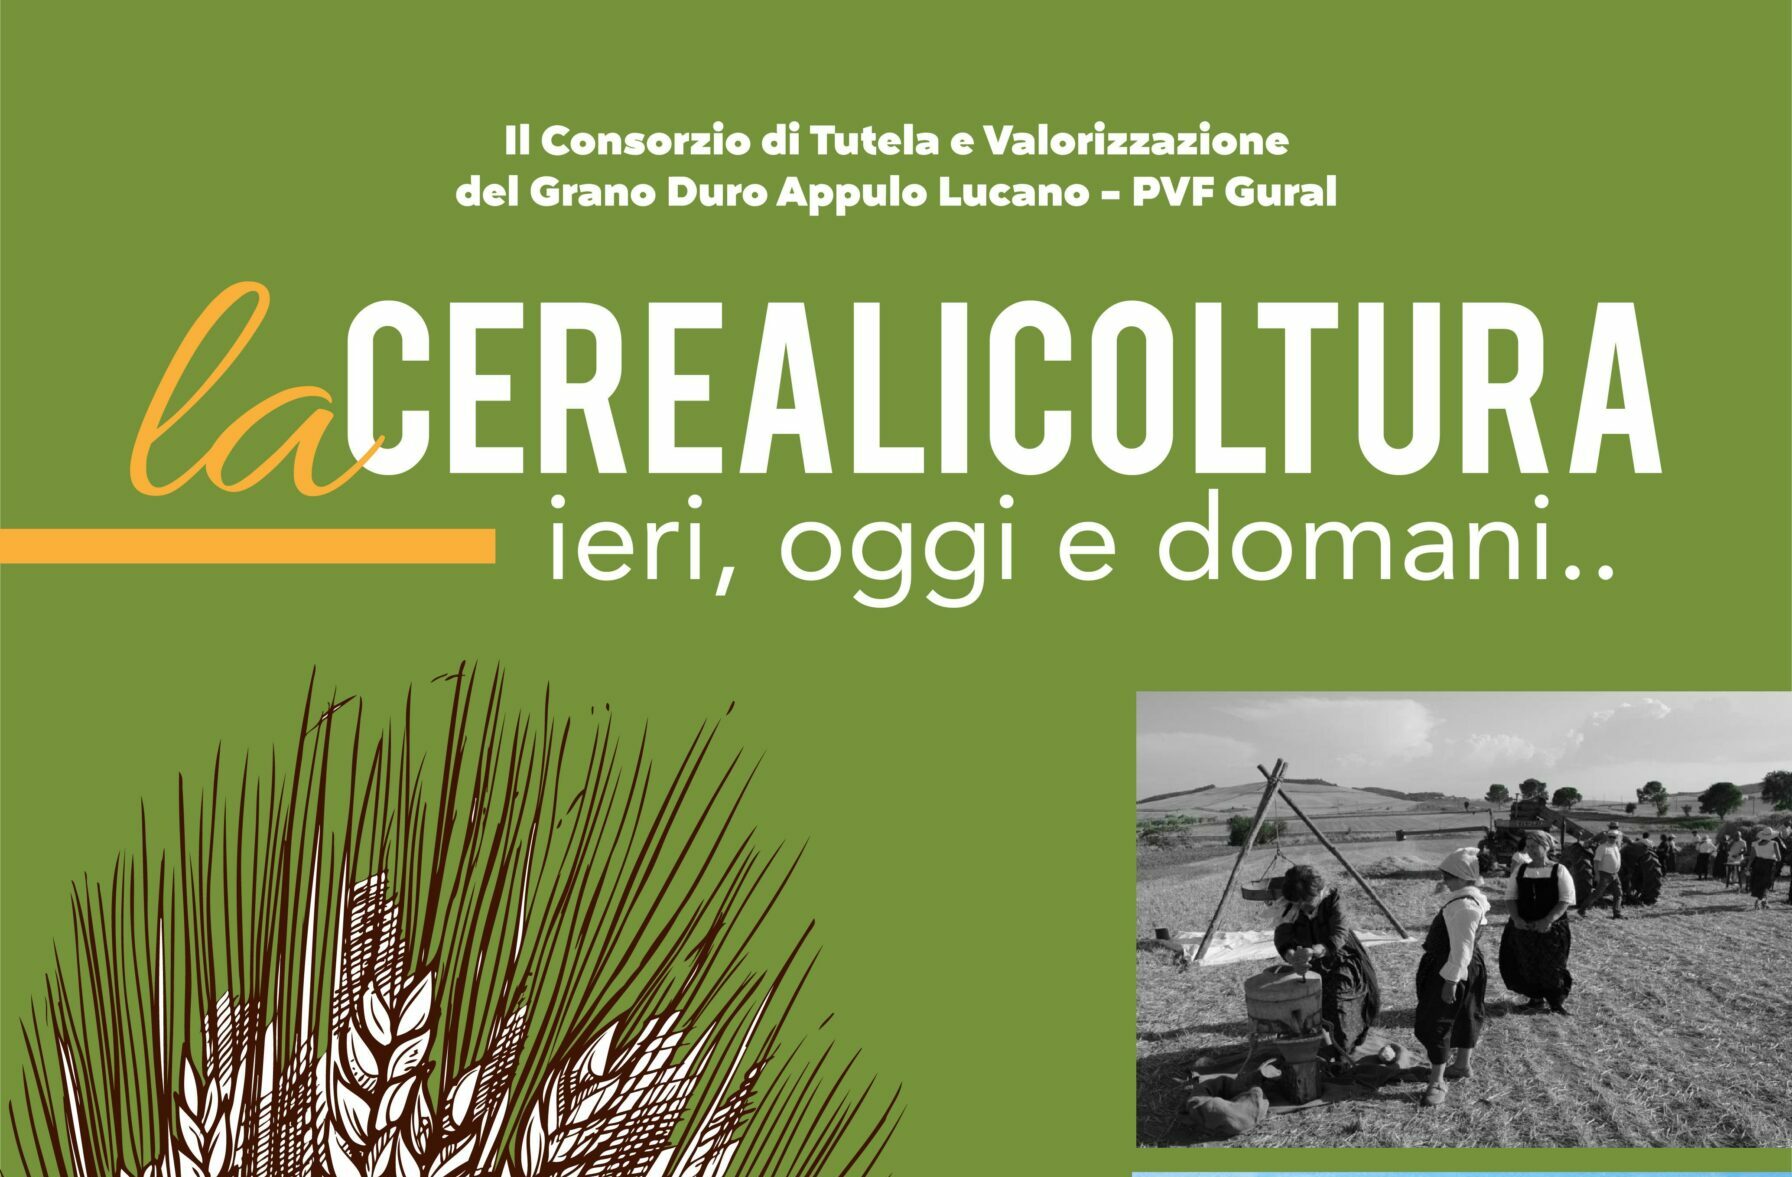 “La cerealicoltura ieri, oggi e domani”: presentazione il 13 all’Istituto Tecnico Agrario Statale “Briganti” di Matera